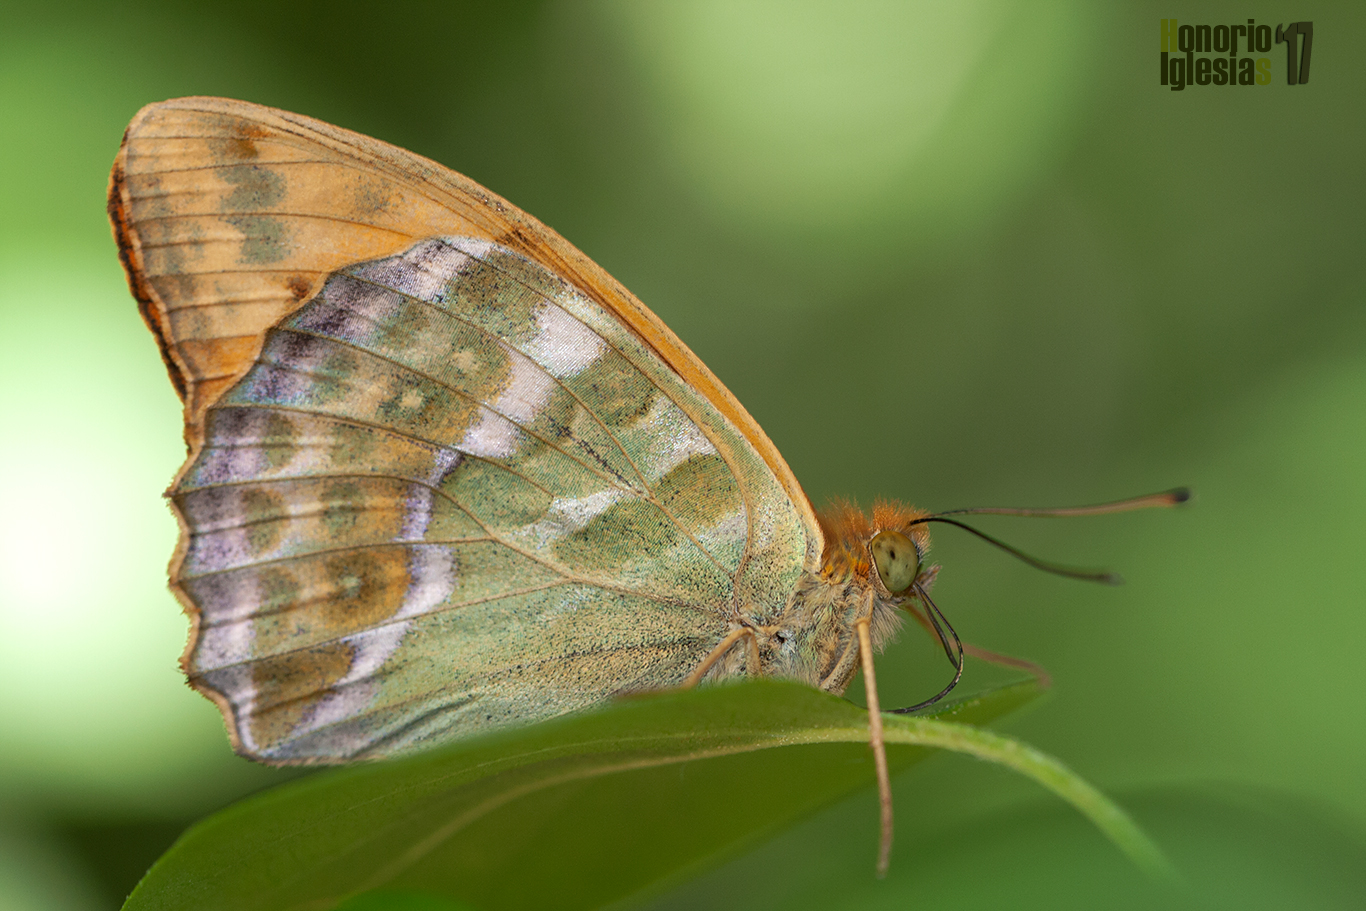 Reverso de mariposa nacarada pafia o nacarada (Argynnis paphia), la ausencia de mancha rojiza en el ala anterior es significativa de la especie y ayuda a diferenciarla de la mariposa Pandora